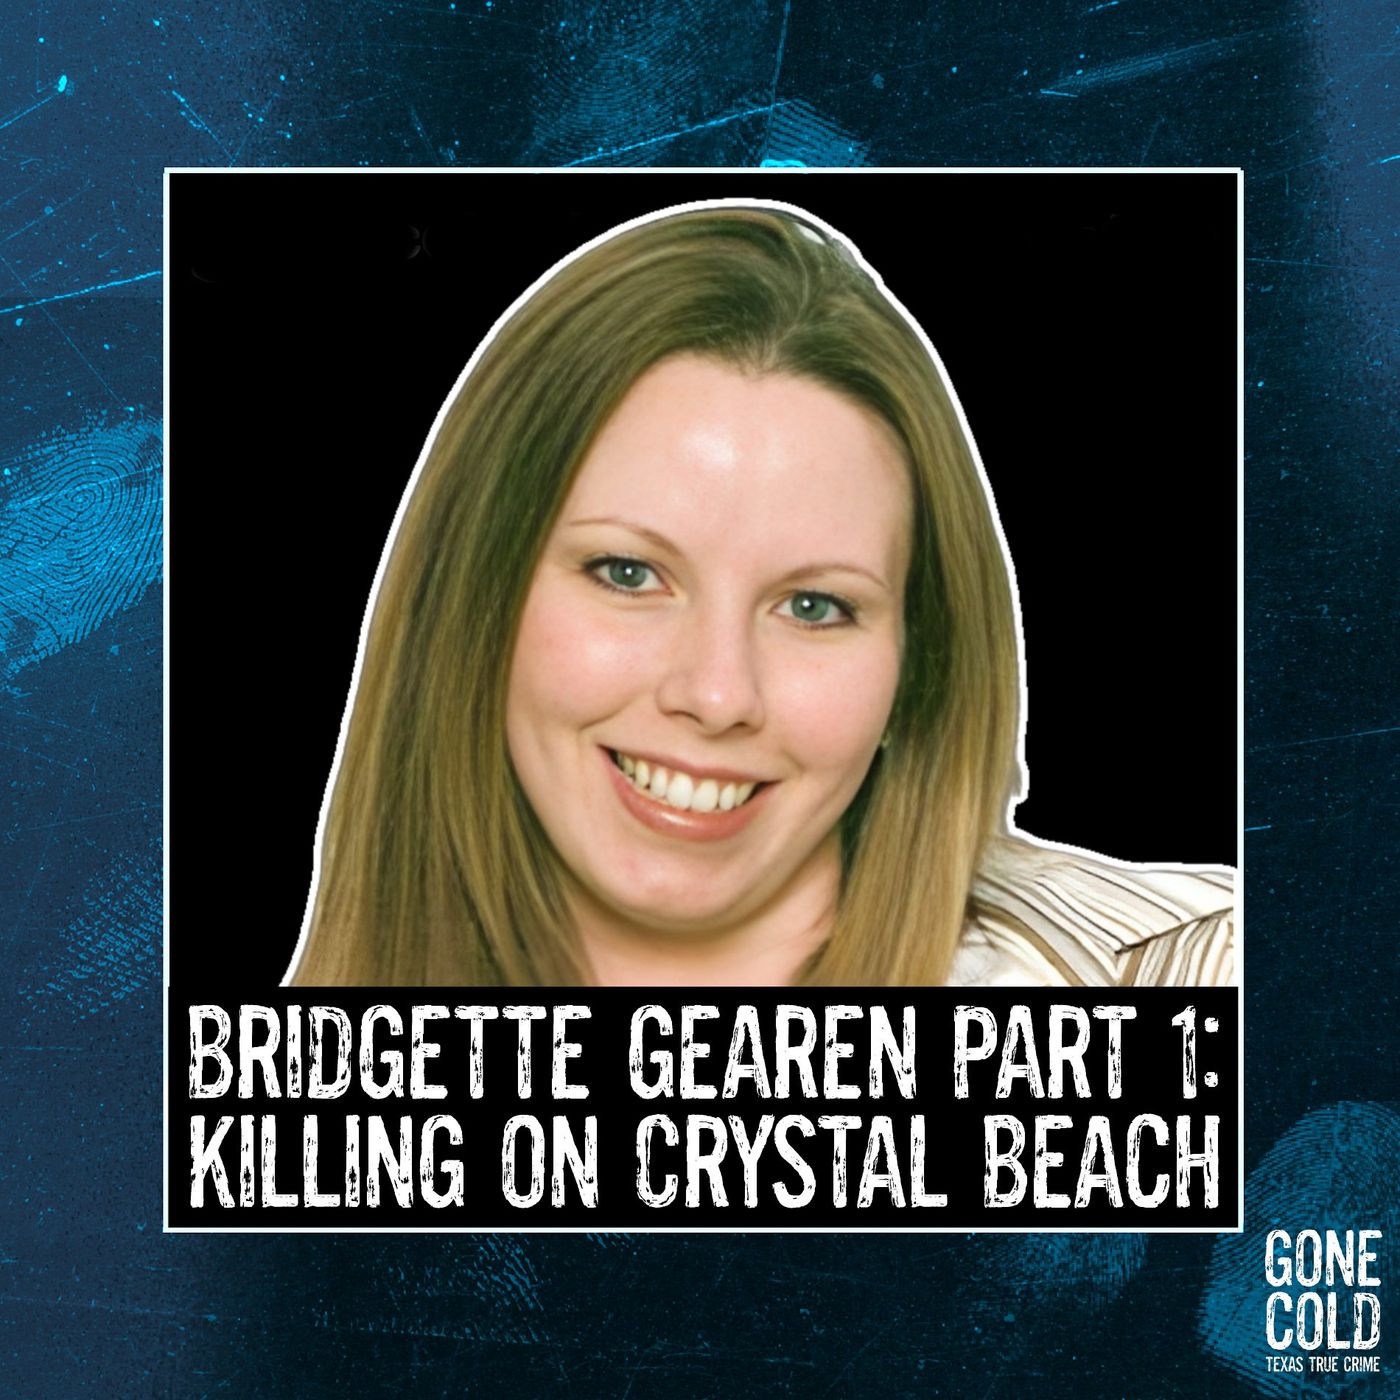 Bridgette Gearen Part 1: Killing on Crystal Beach